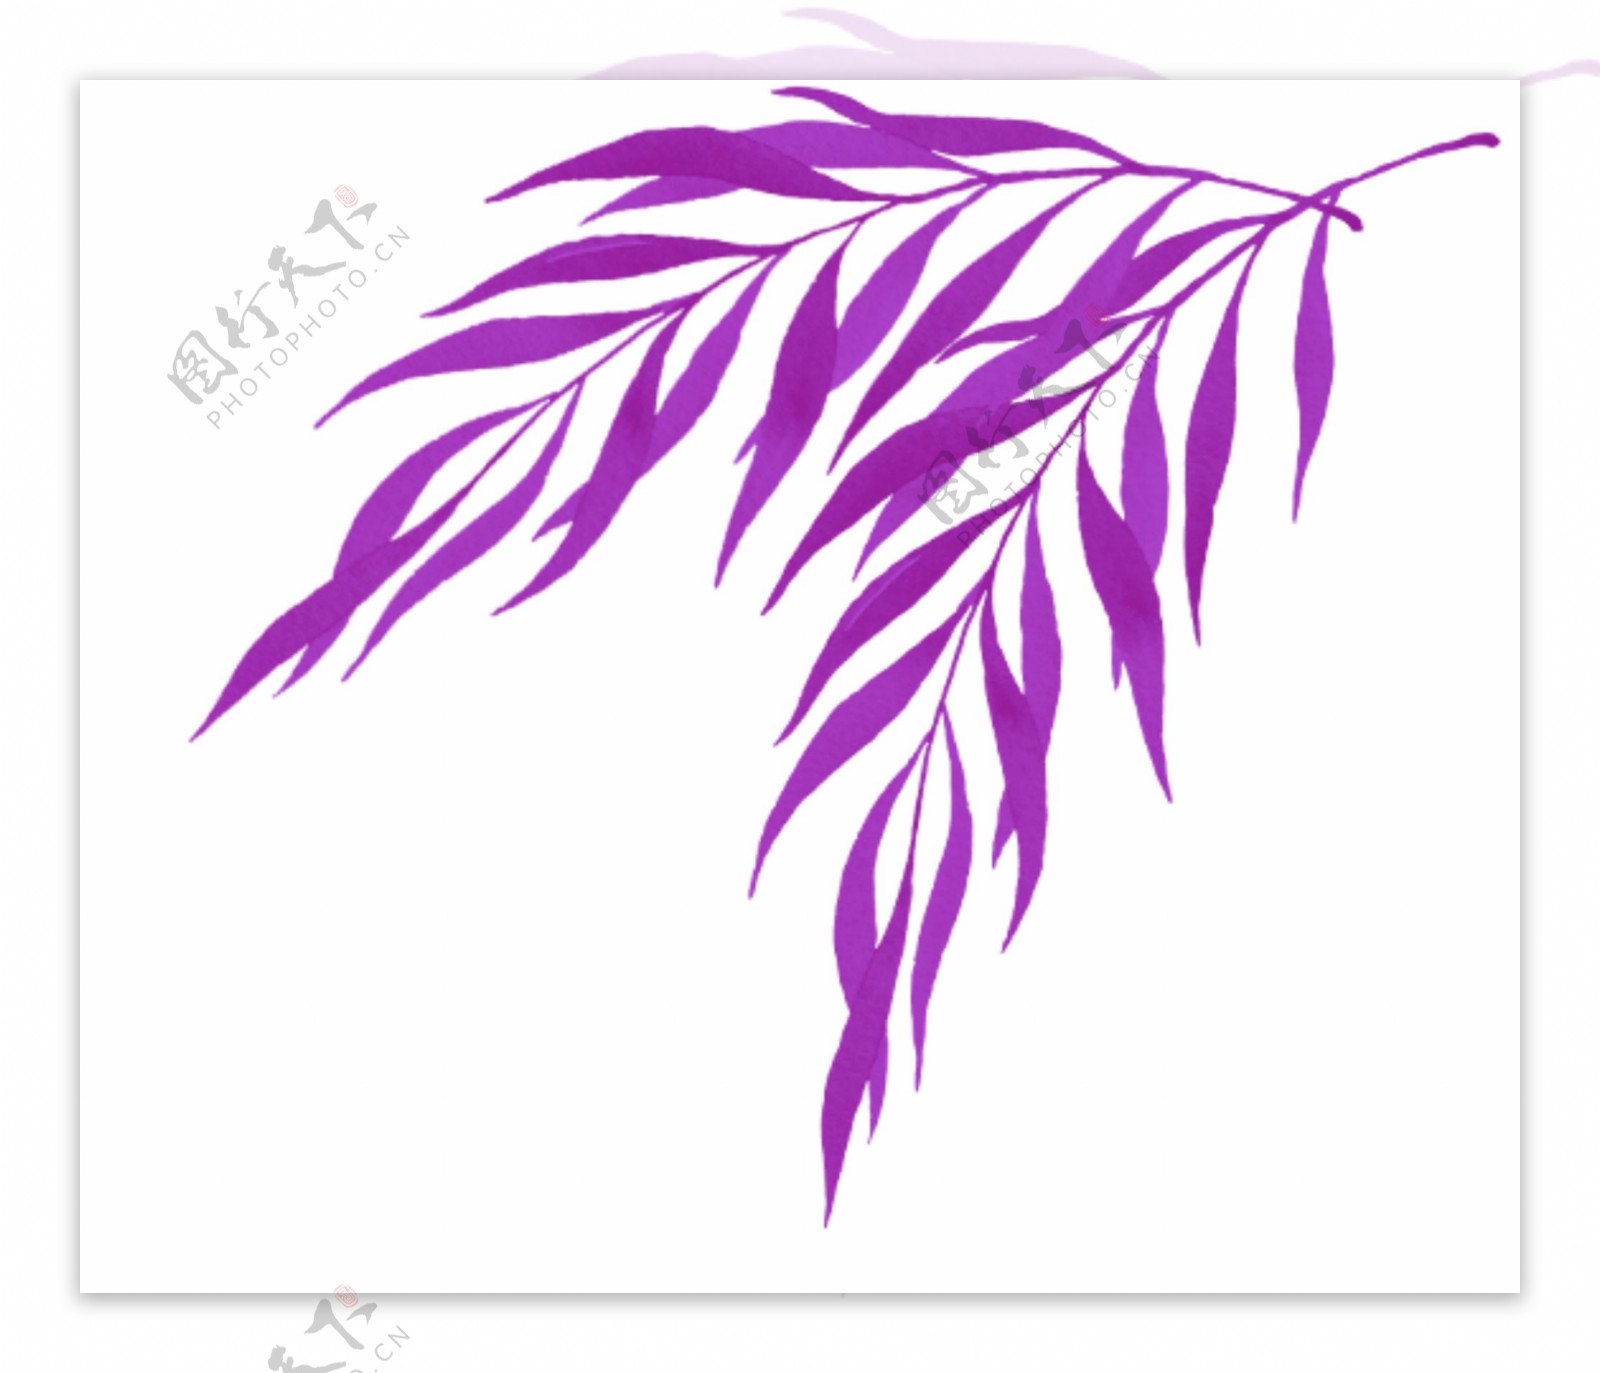 戛纳紫色叶子